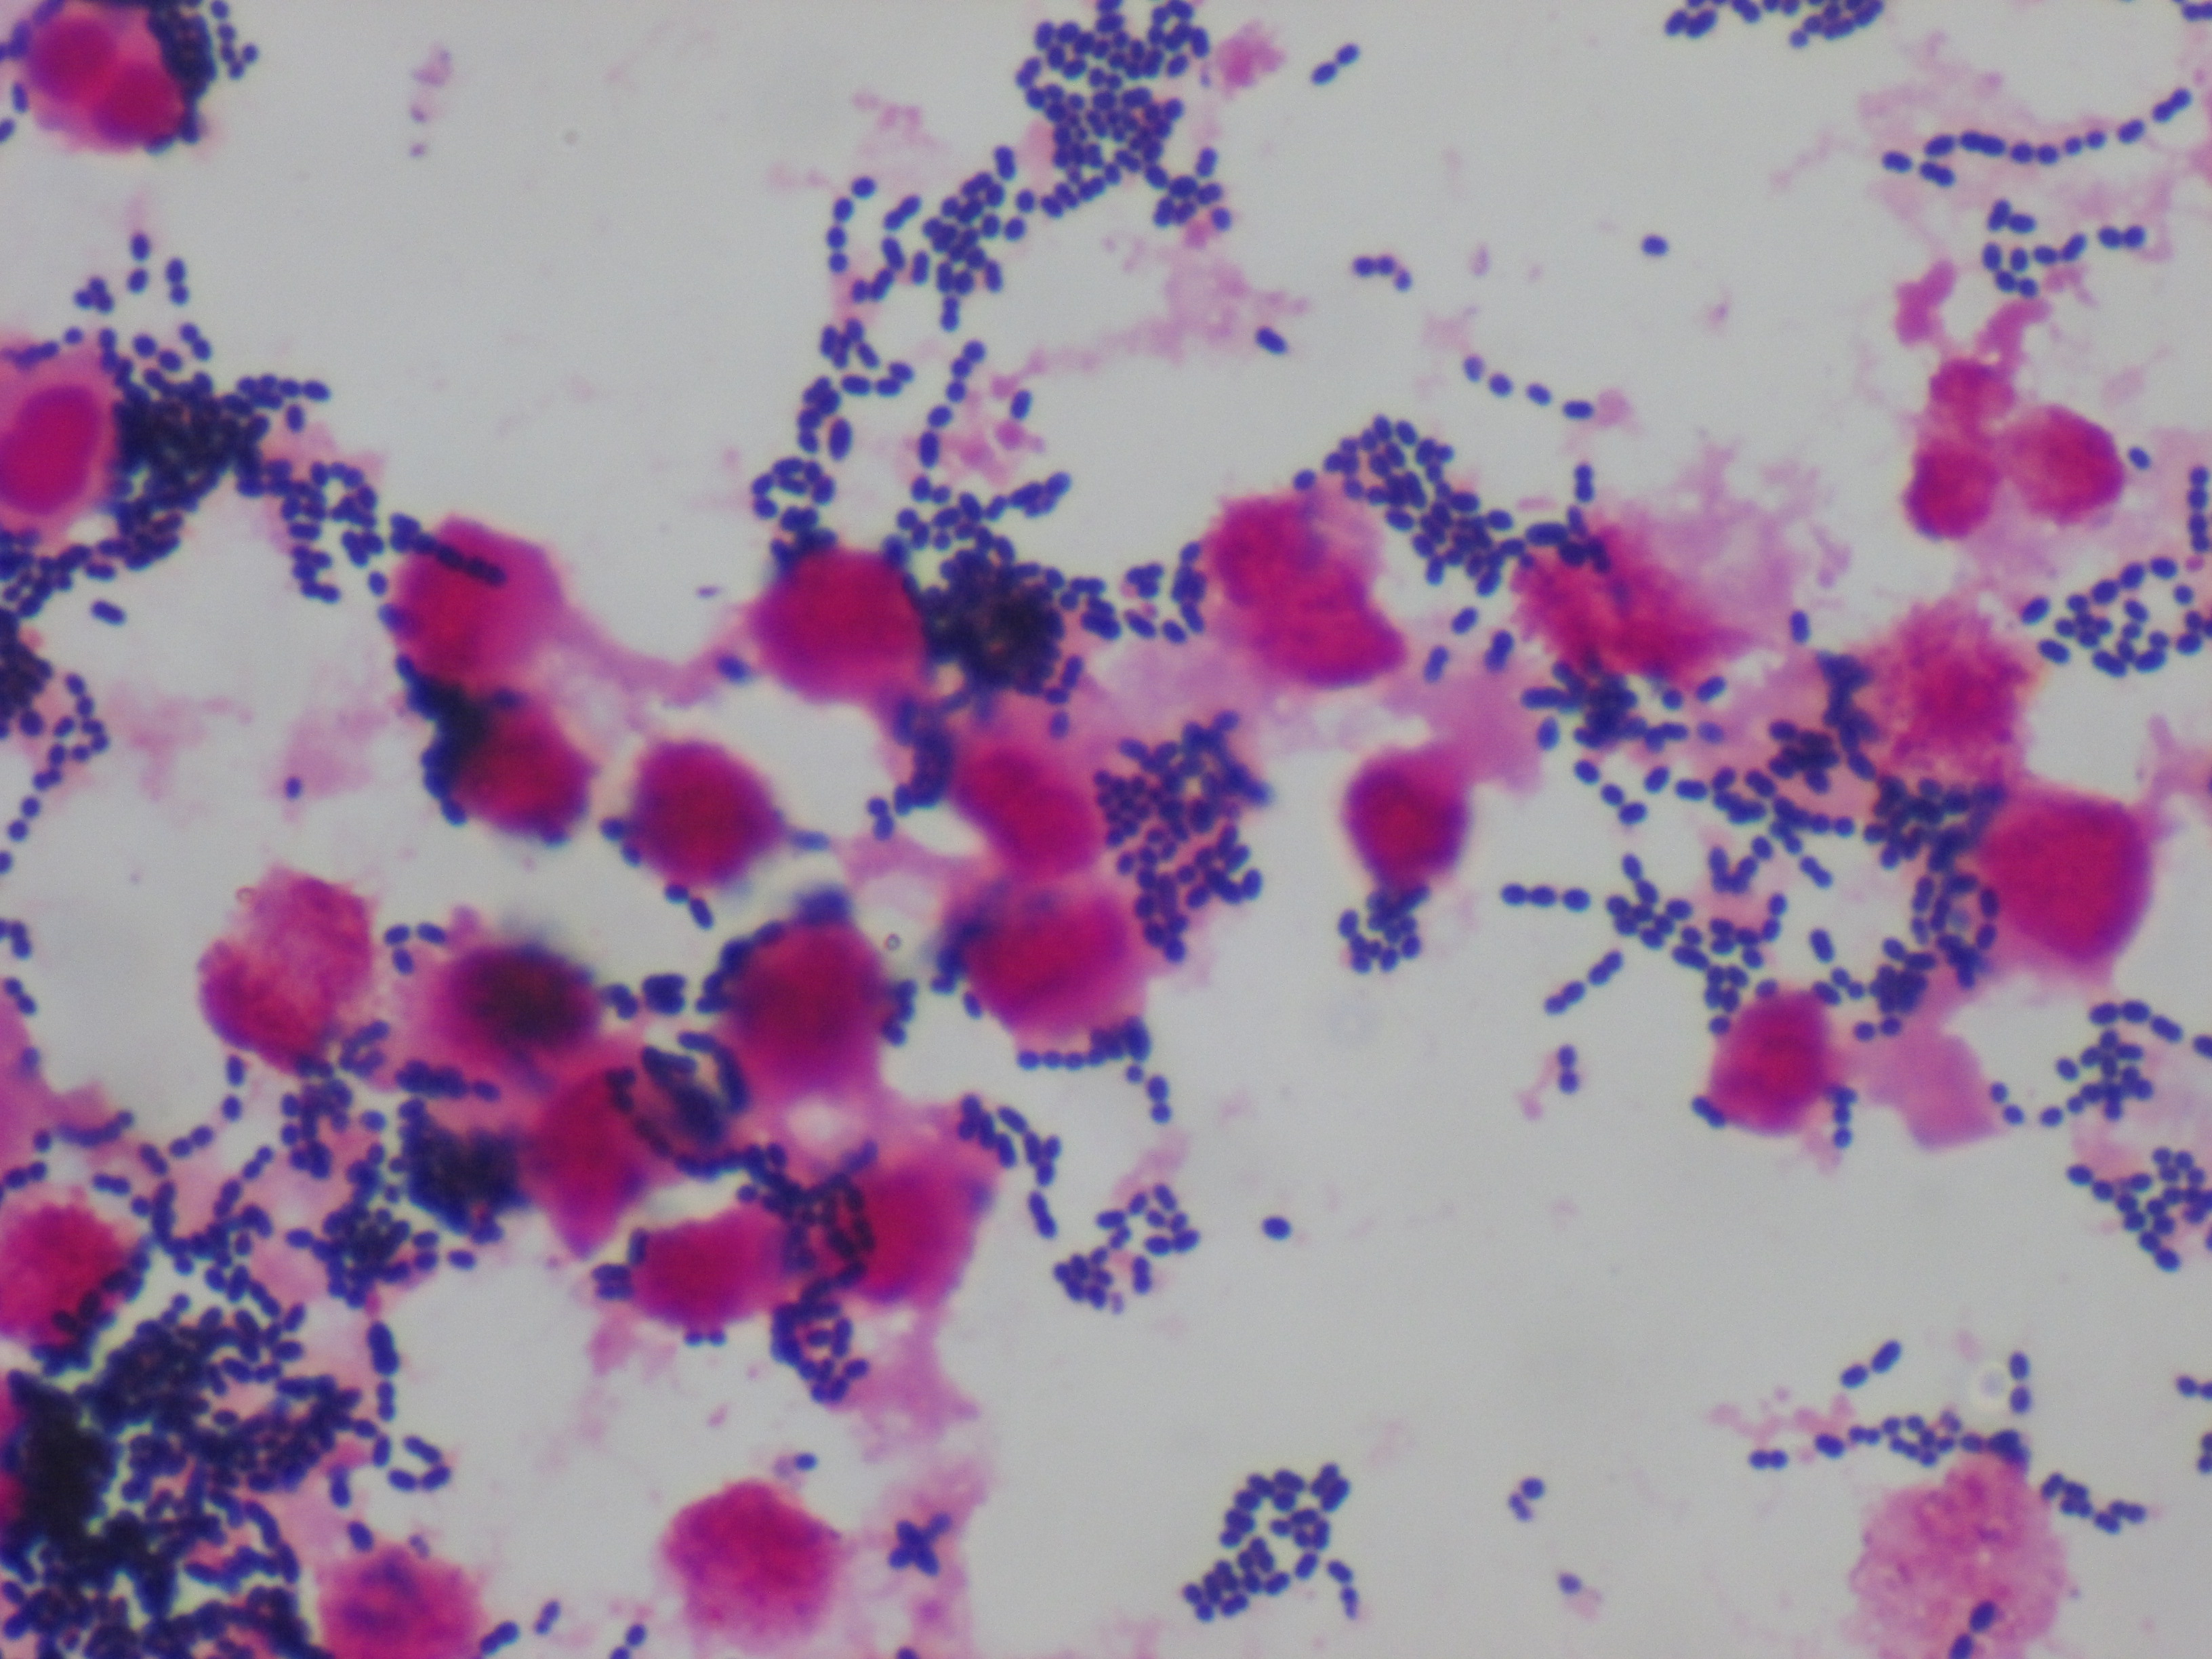 Enterococcus feacalis 〔腸球菌〕